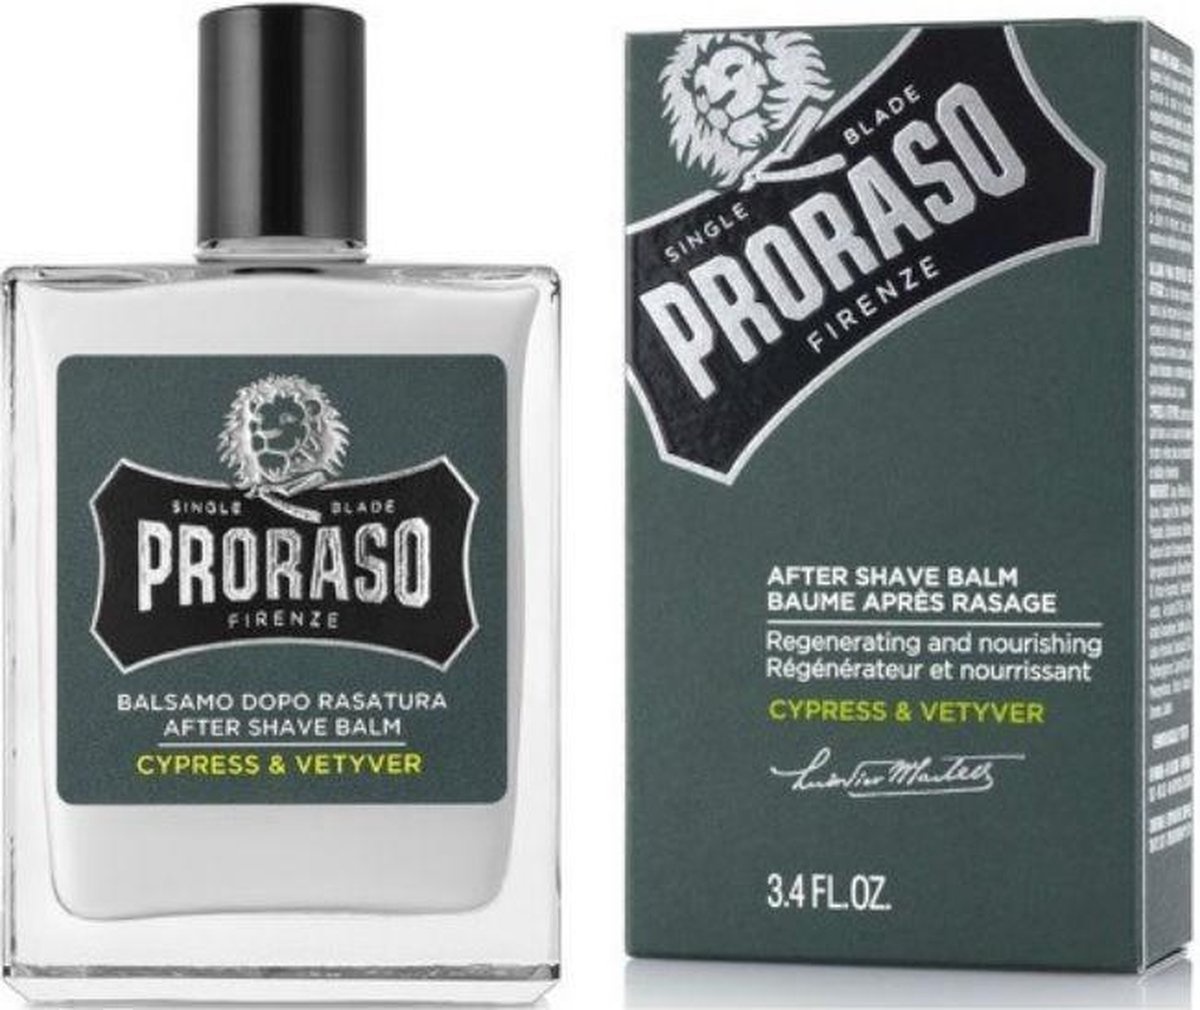 Voordeeldrogisterij Proraso Cypress & Vetyver Aftershave Balm 100 ml. aanbieding